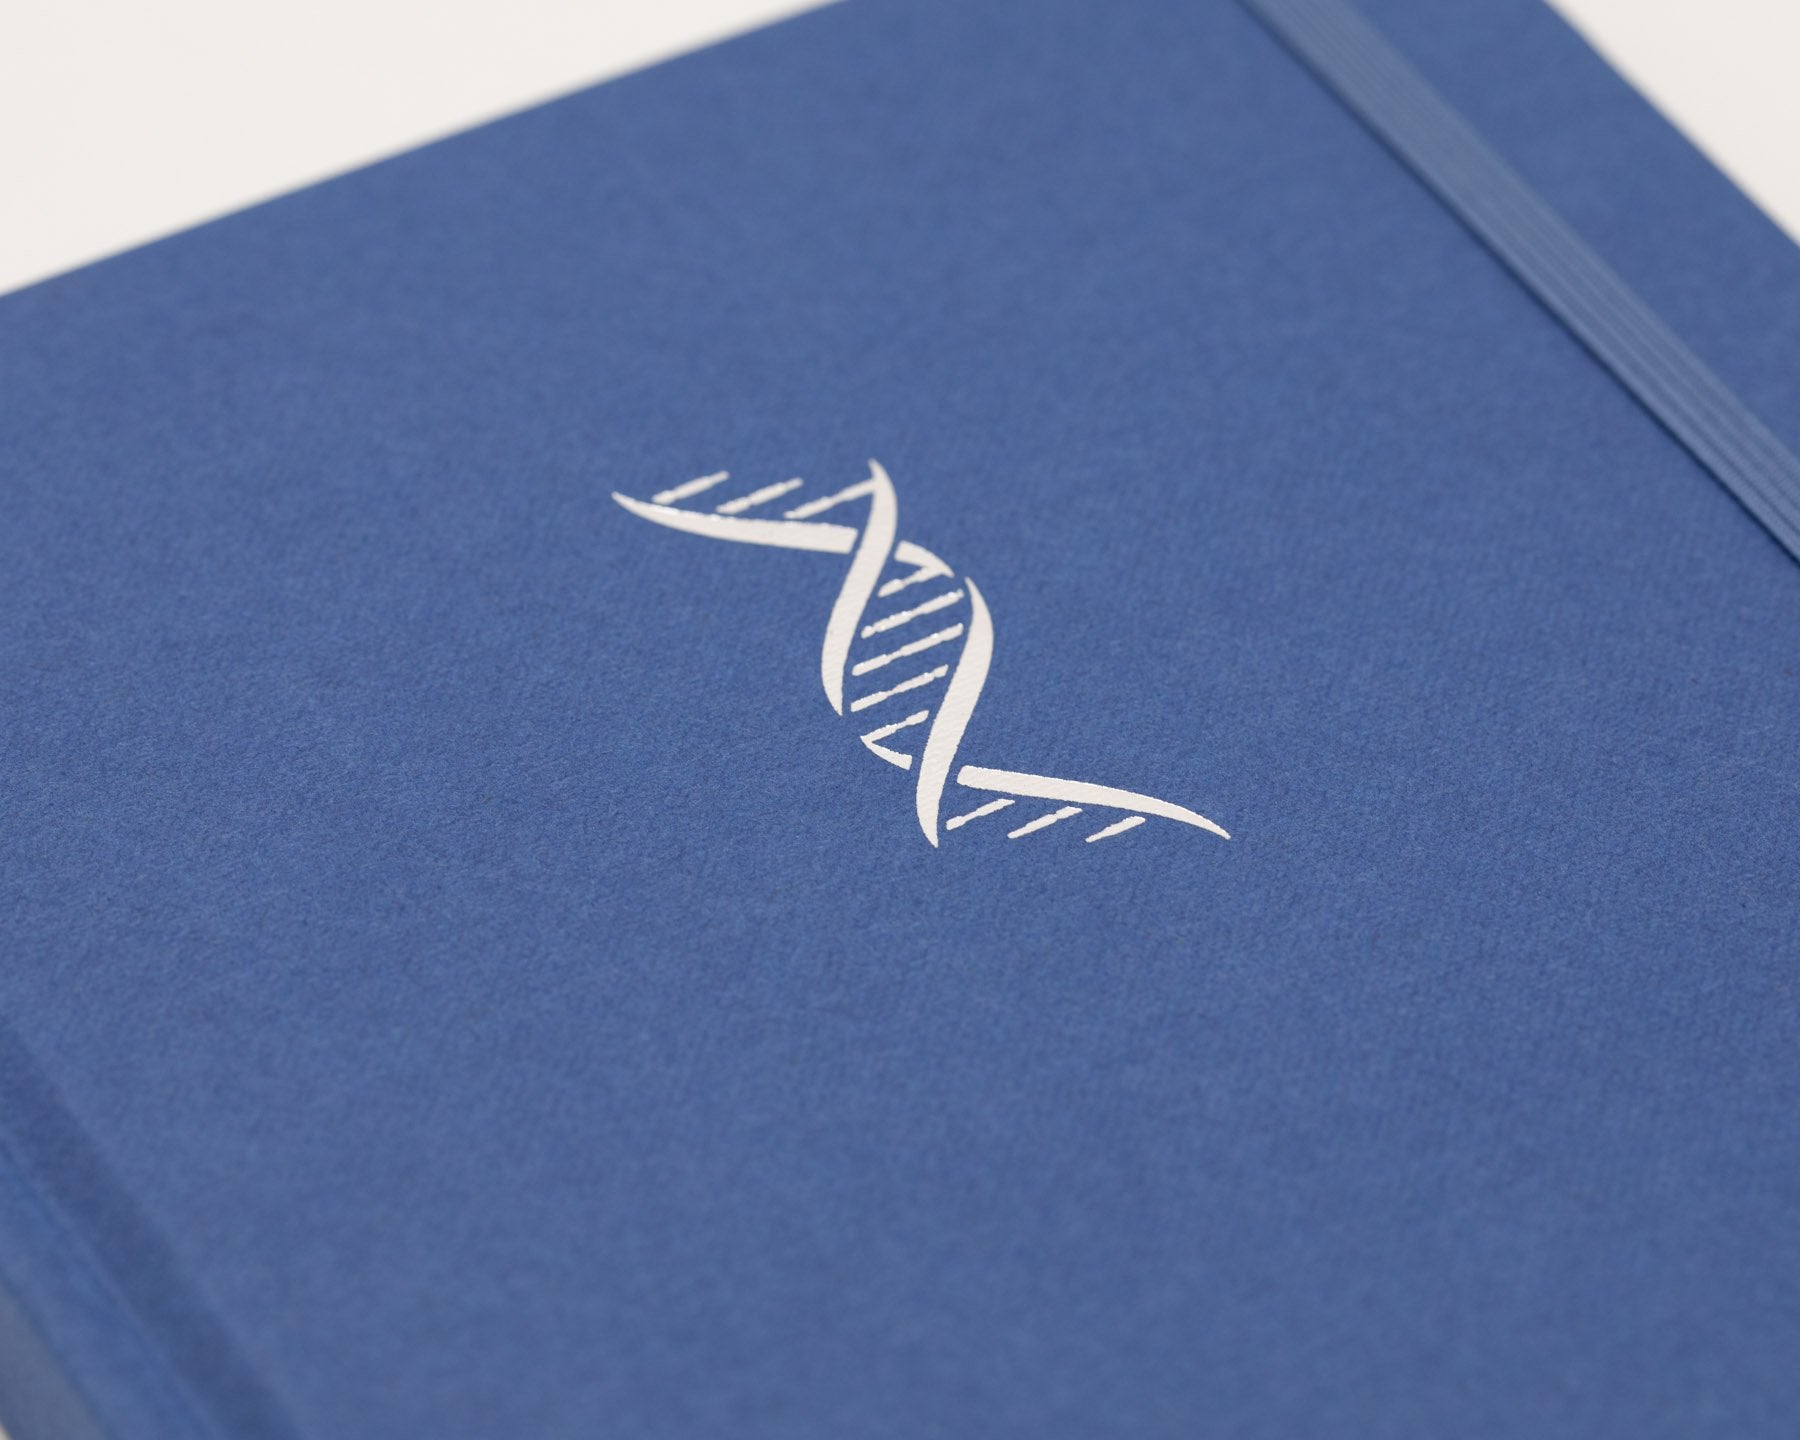 Genetics & DNA A5 Hardcover - Tech Blue